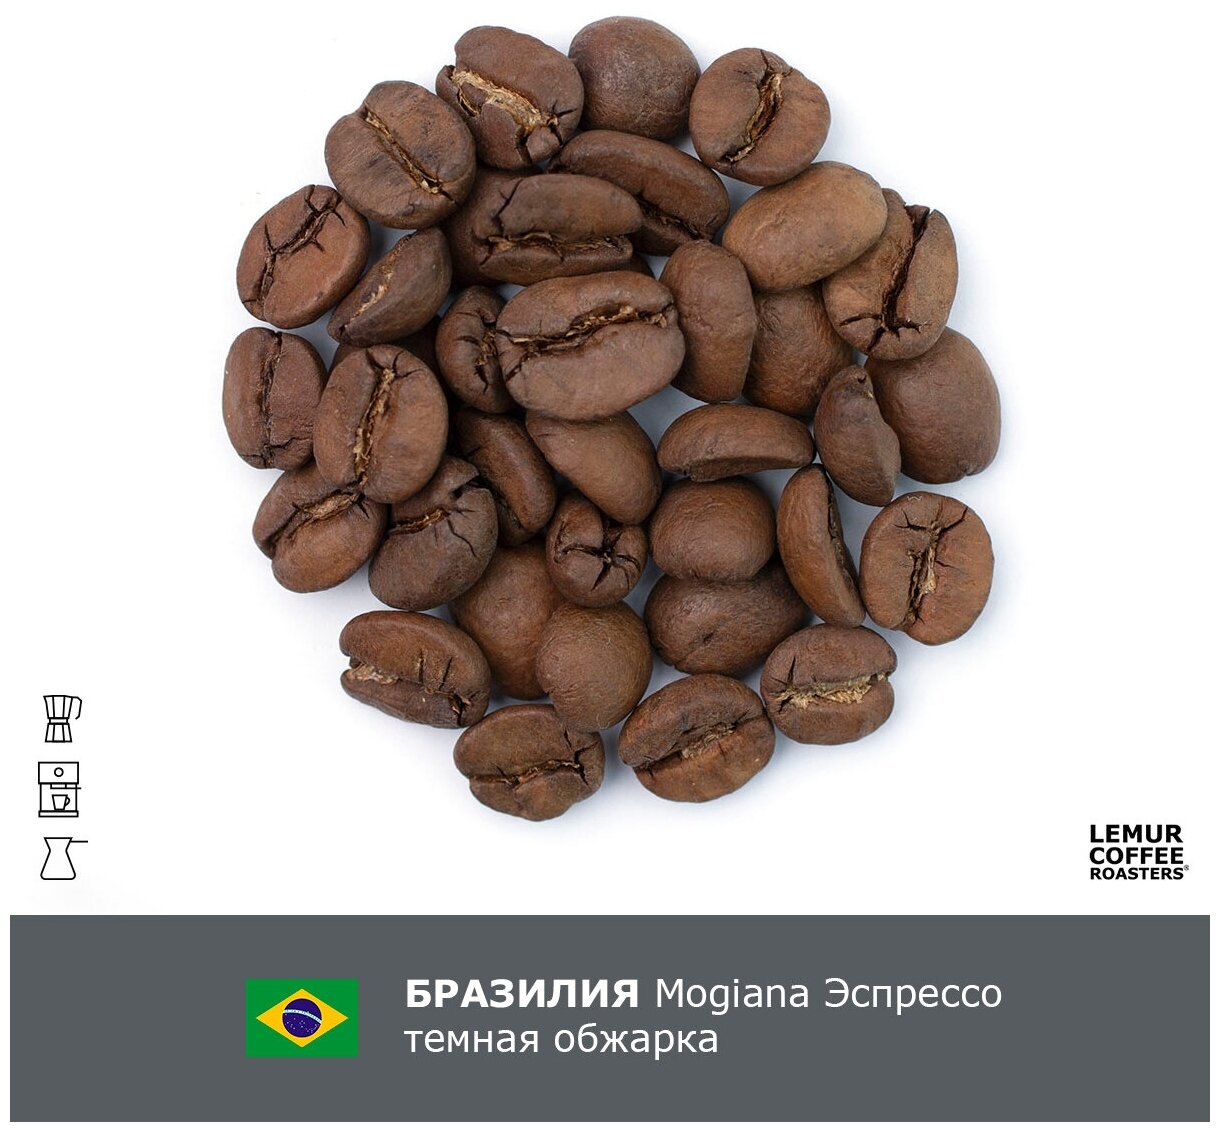 Свежеобжаренный кофе в зернах 1 кг Бразилия Можиана Эспрессо Темная обжарка Lemur Coffee Roasters, дата обжарки 22.05.2024